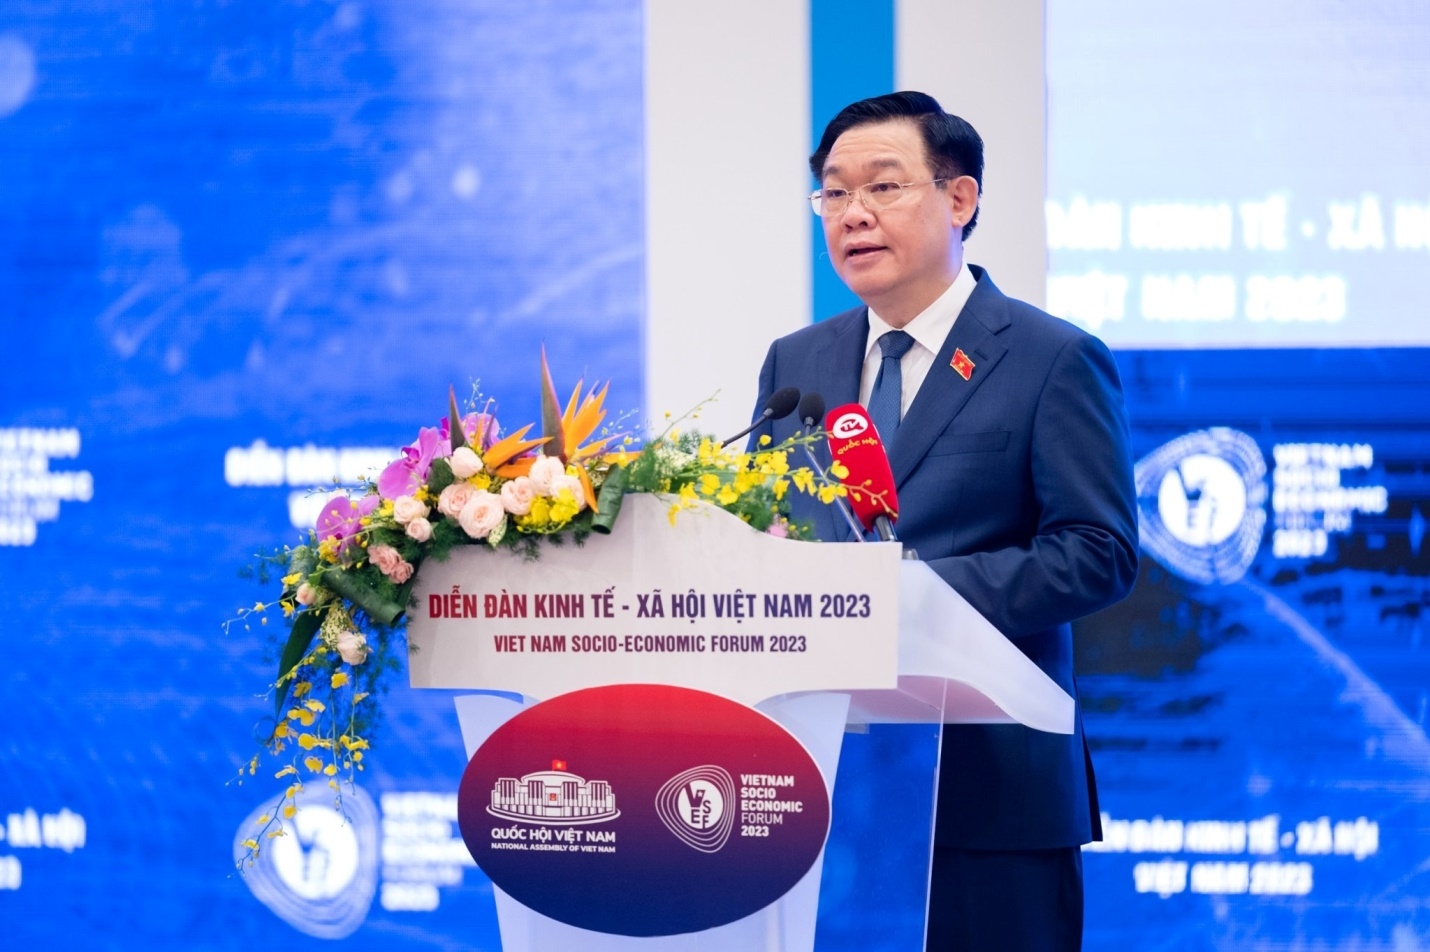 Chủ tịch Quốc hội Vương Đình Huệ phát biểu khai mạc Diễn đàn Kinh tế - Xã hội Việt Nam 2023.